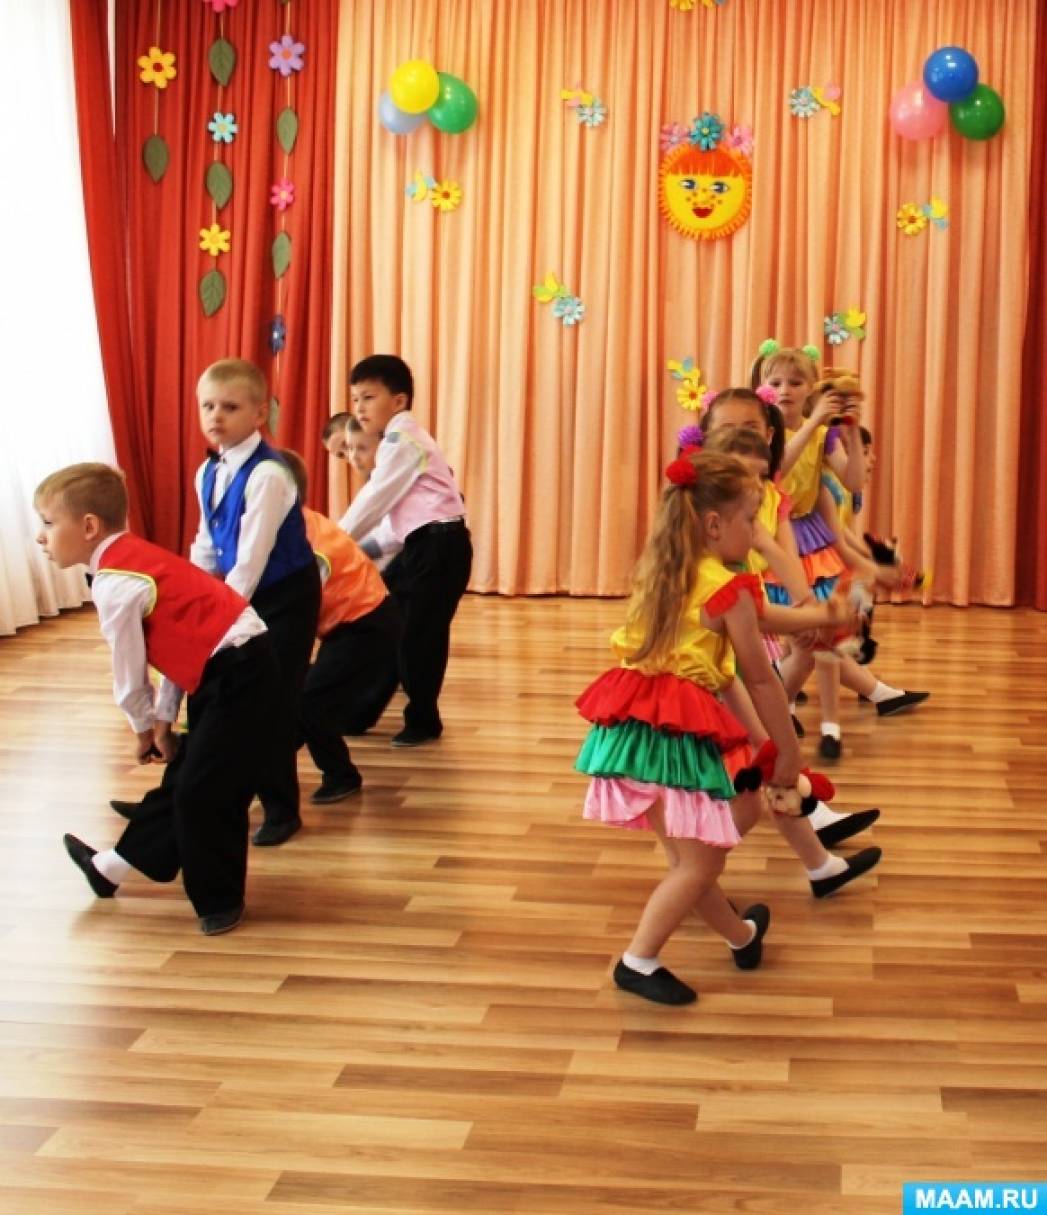 Танец прощайте игрушки в детском саду видео. Воспитатель танцует с детьми. Танец детей с воспитателями. Танец воспитателей в детском саду. Постановка детского танца в детском саду.